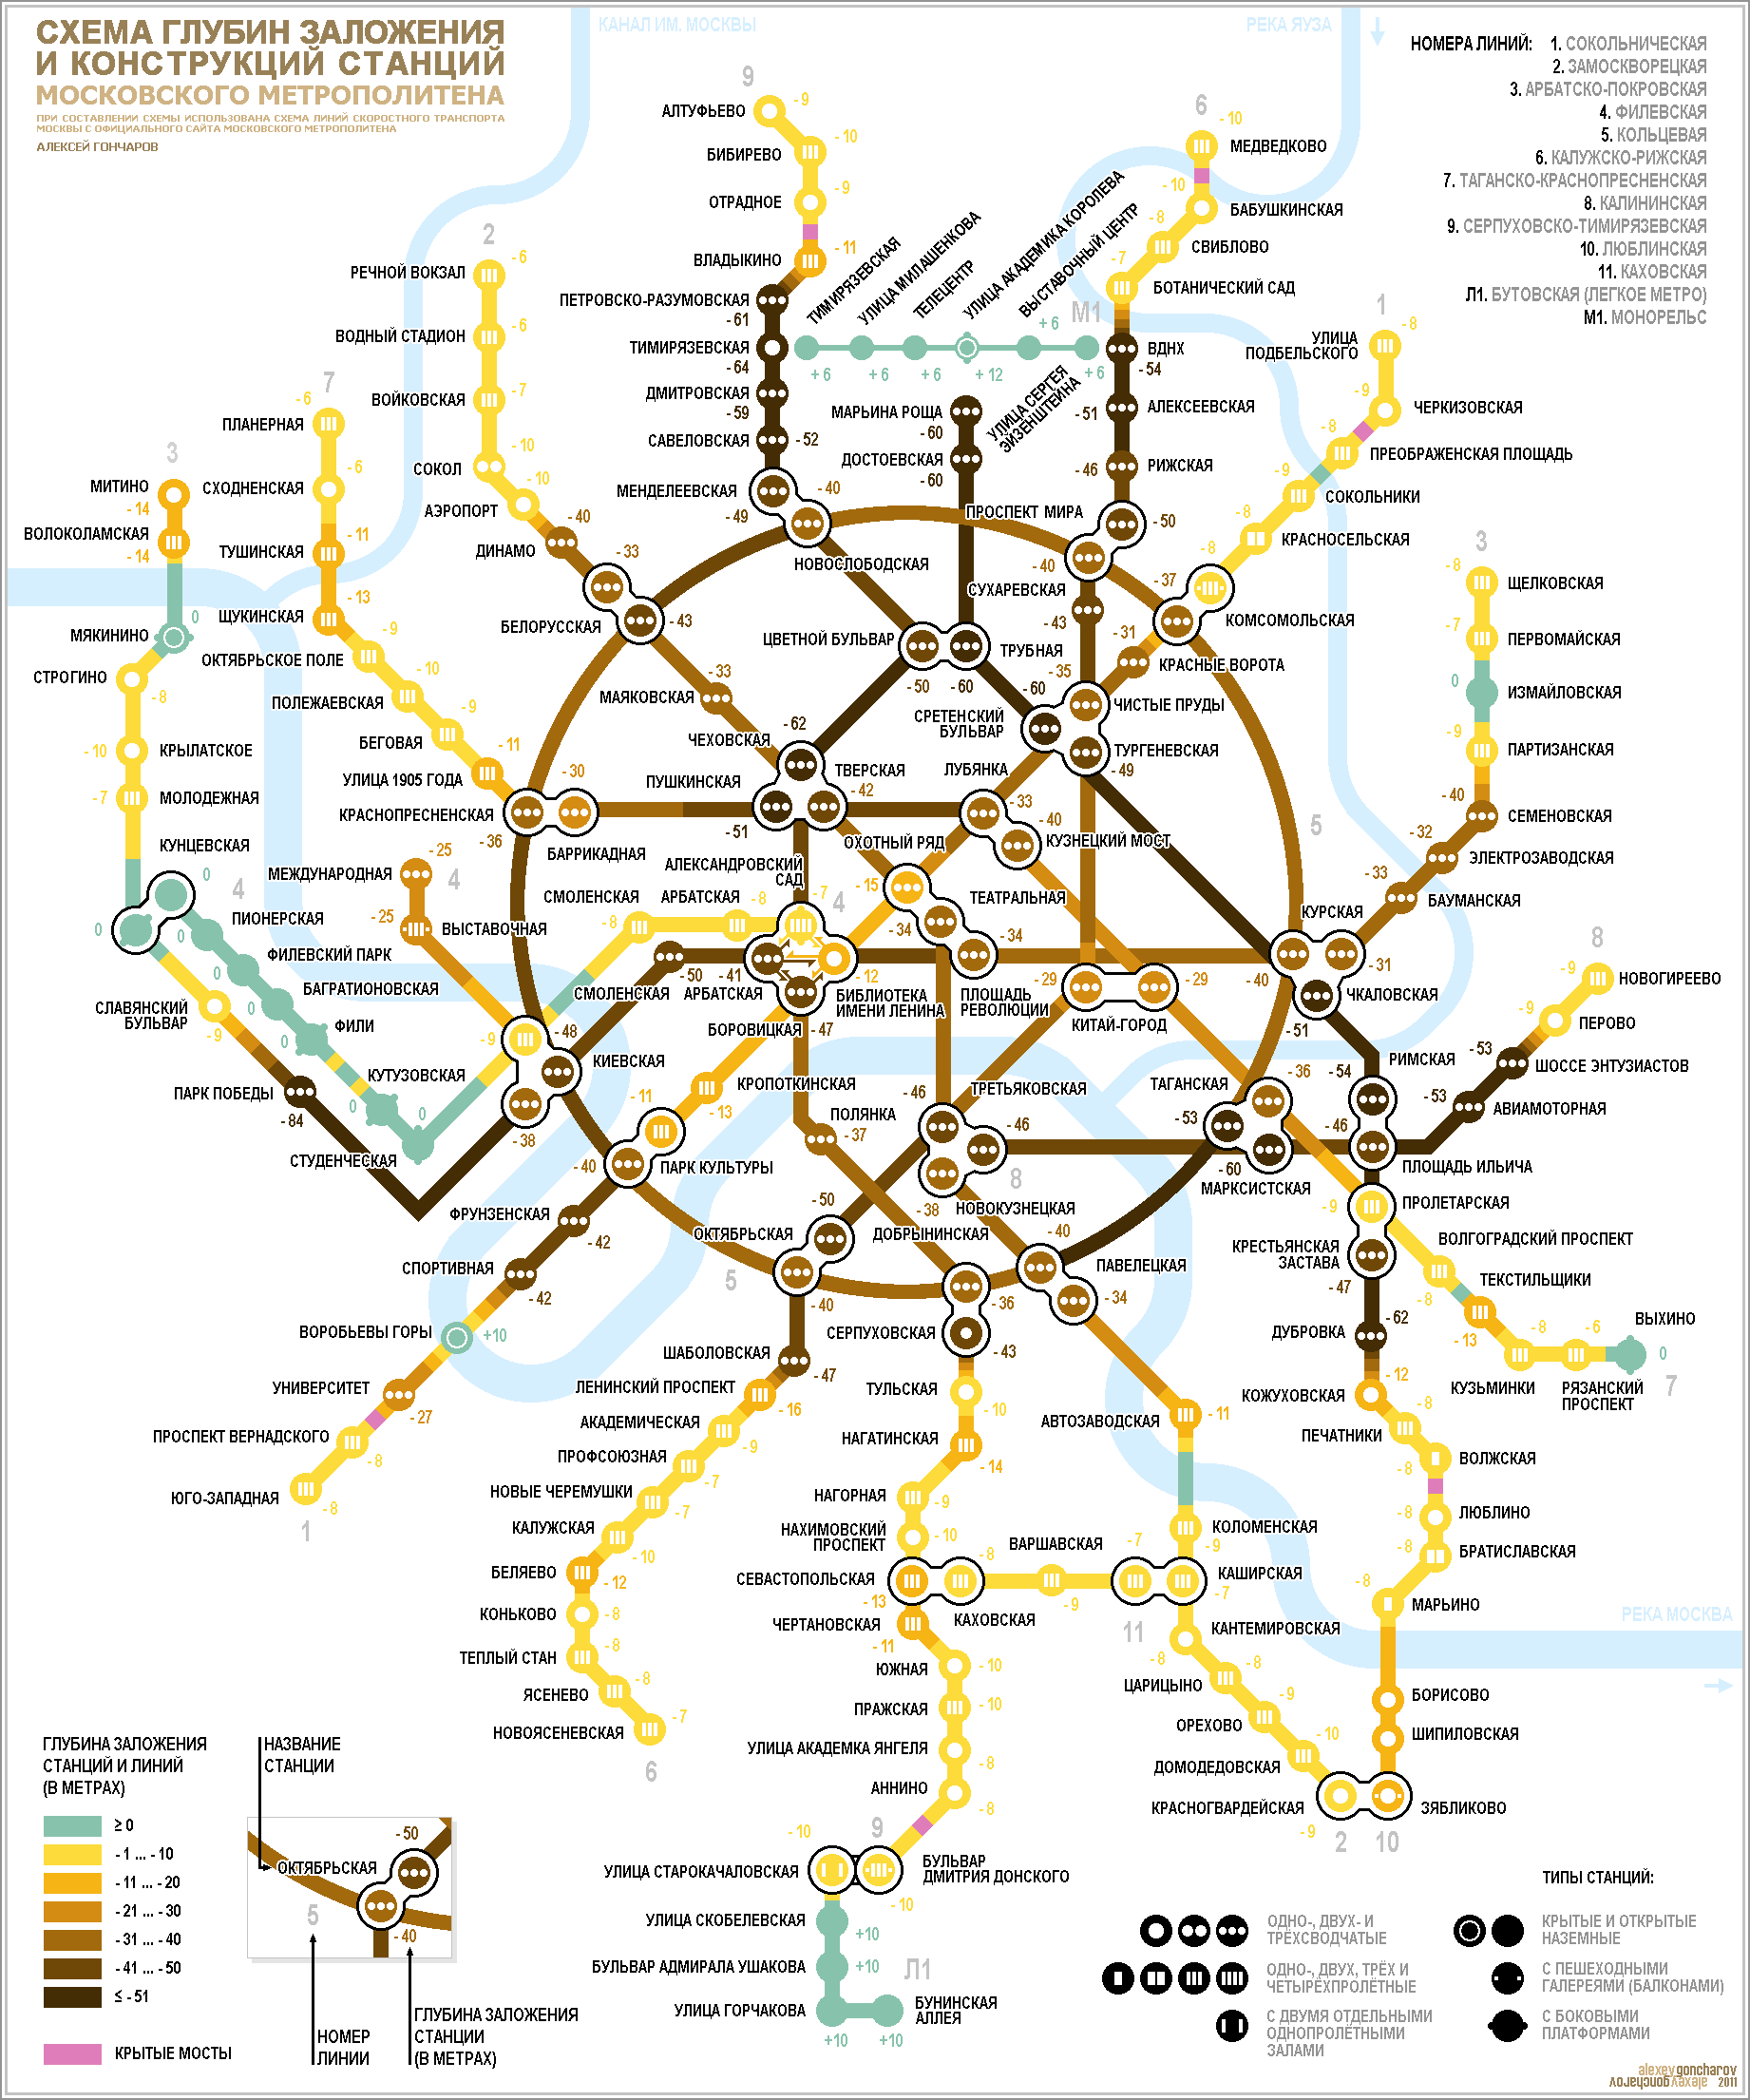 Схема глубин заложения и конструкций станций московского метрополитена